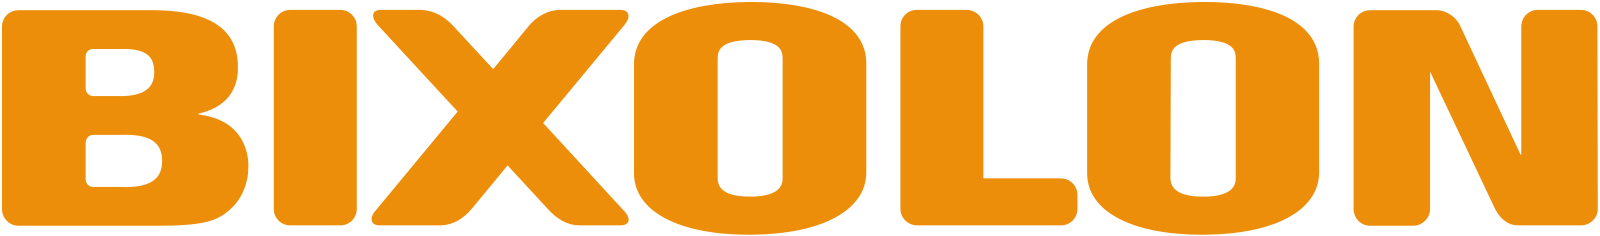 Bixolon_Logo